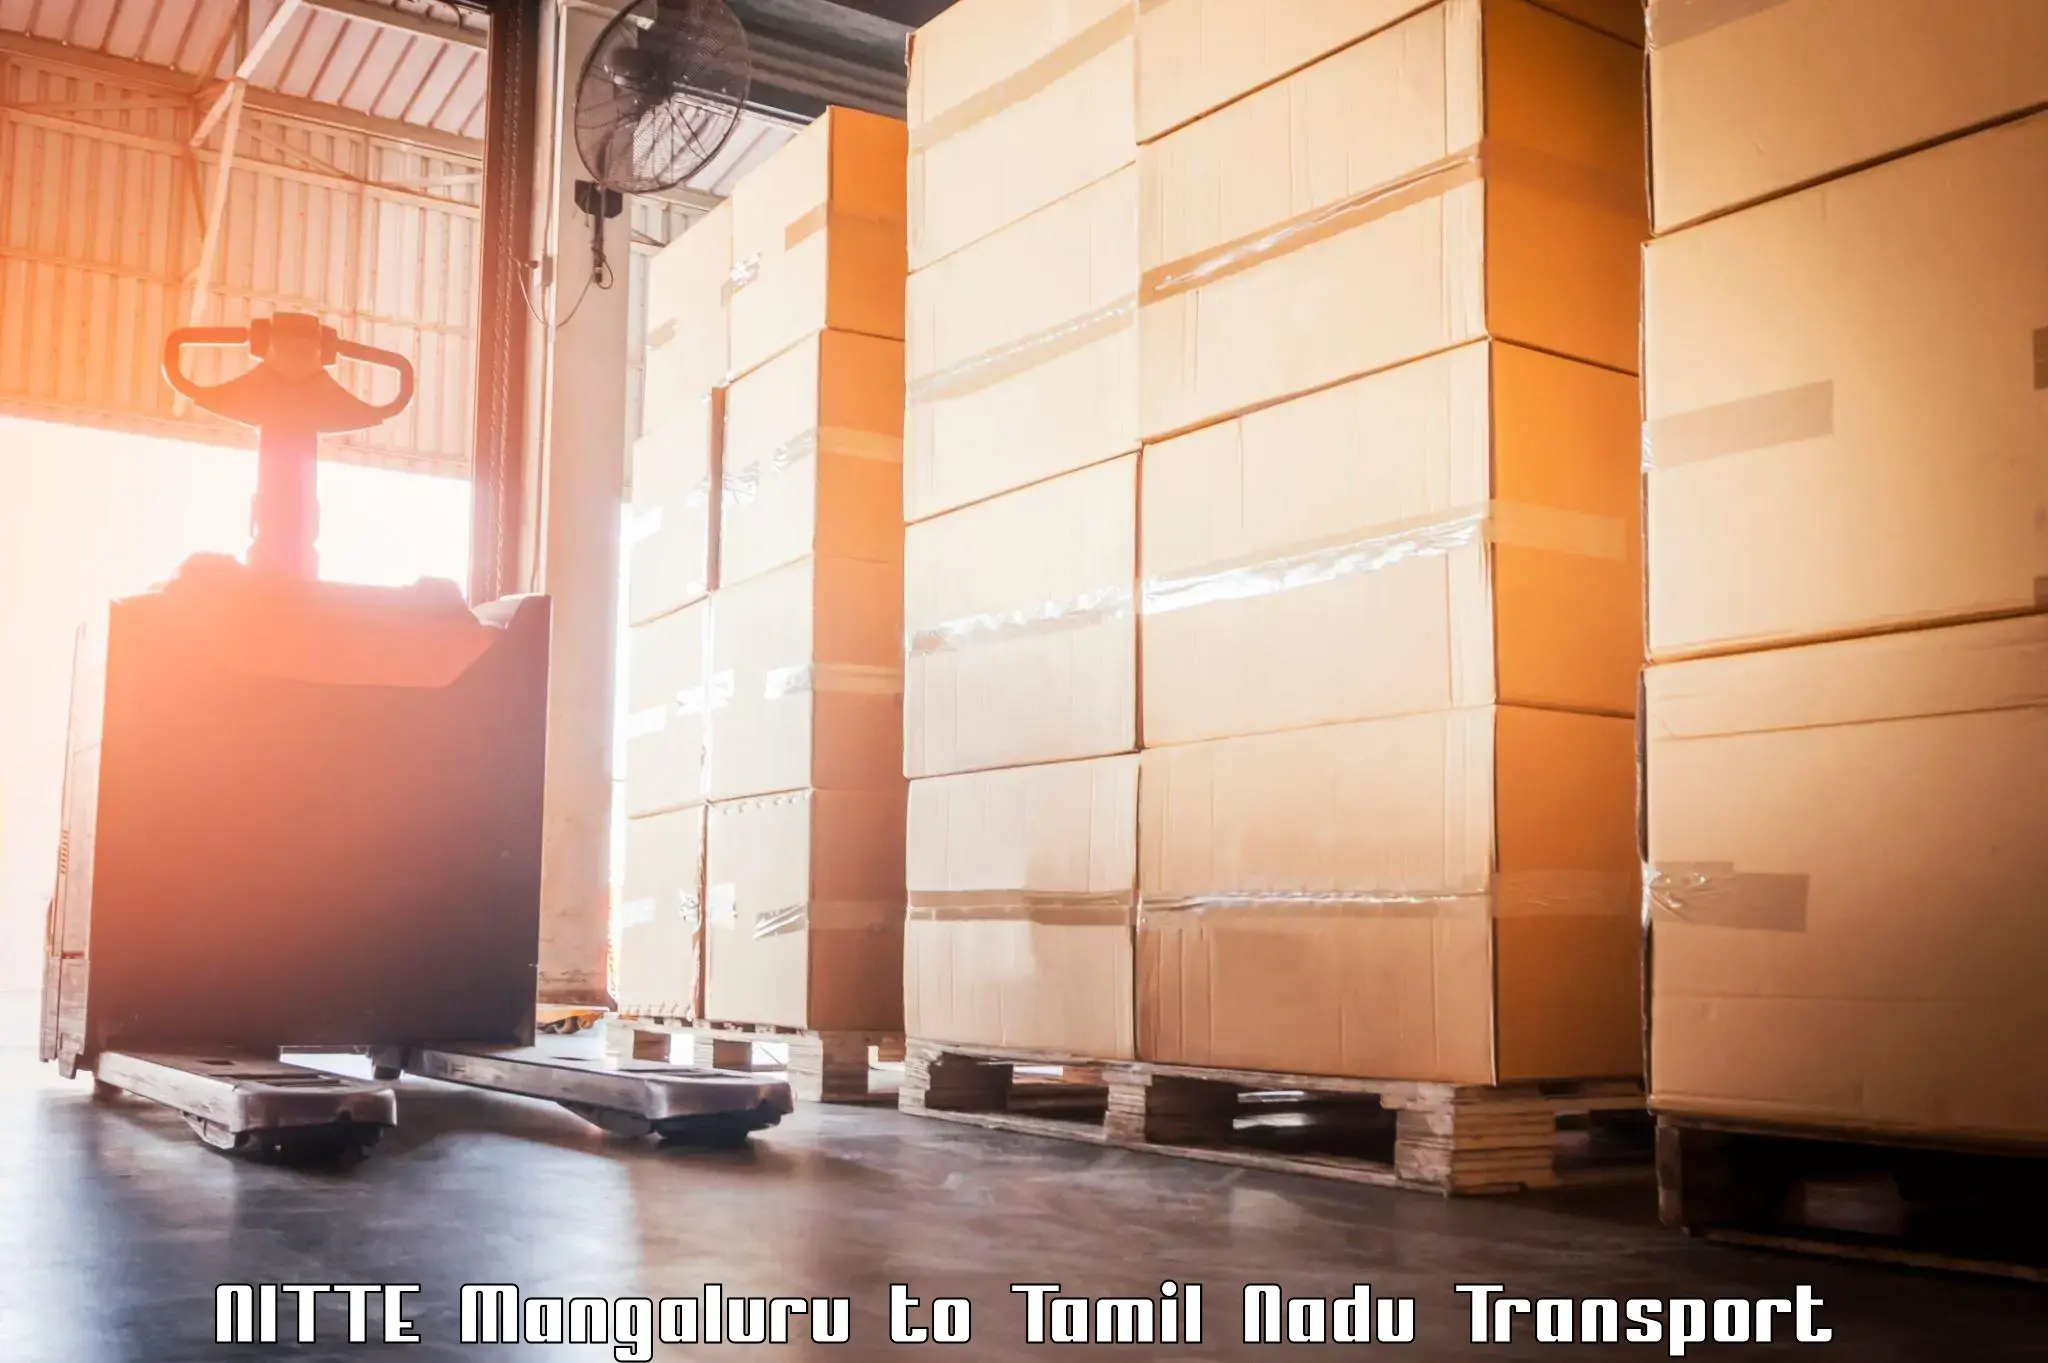 Truck transport companies in India NITTE Mangaluru to Cumbum